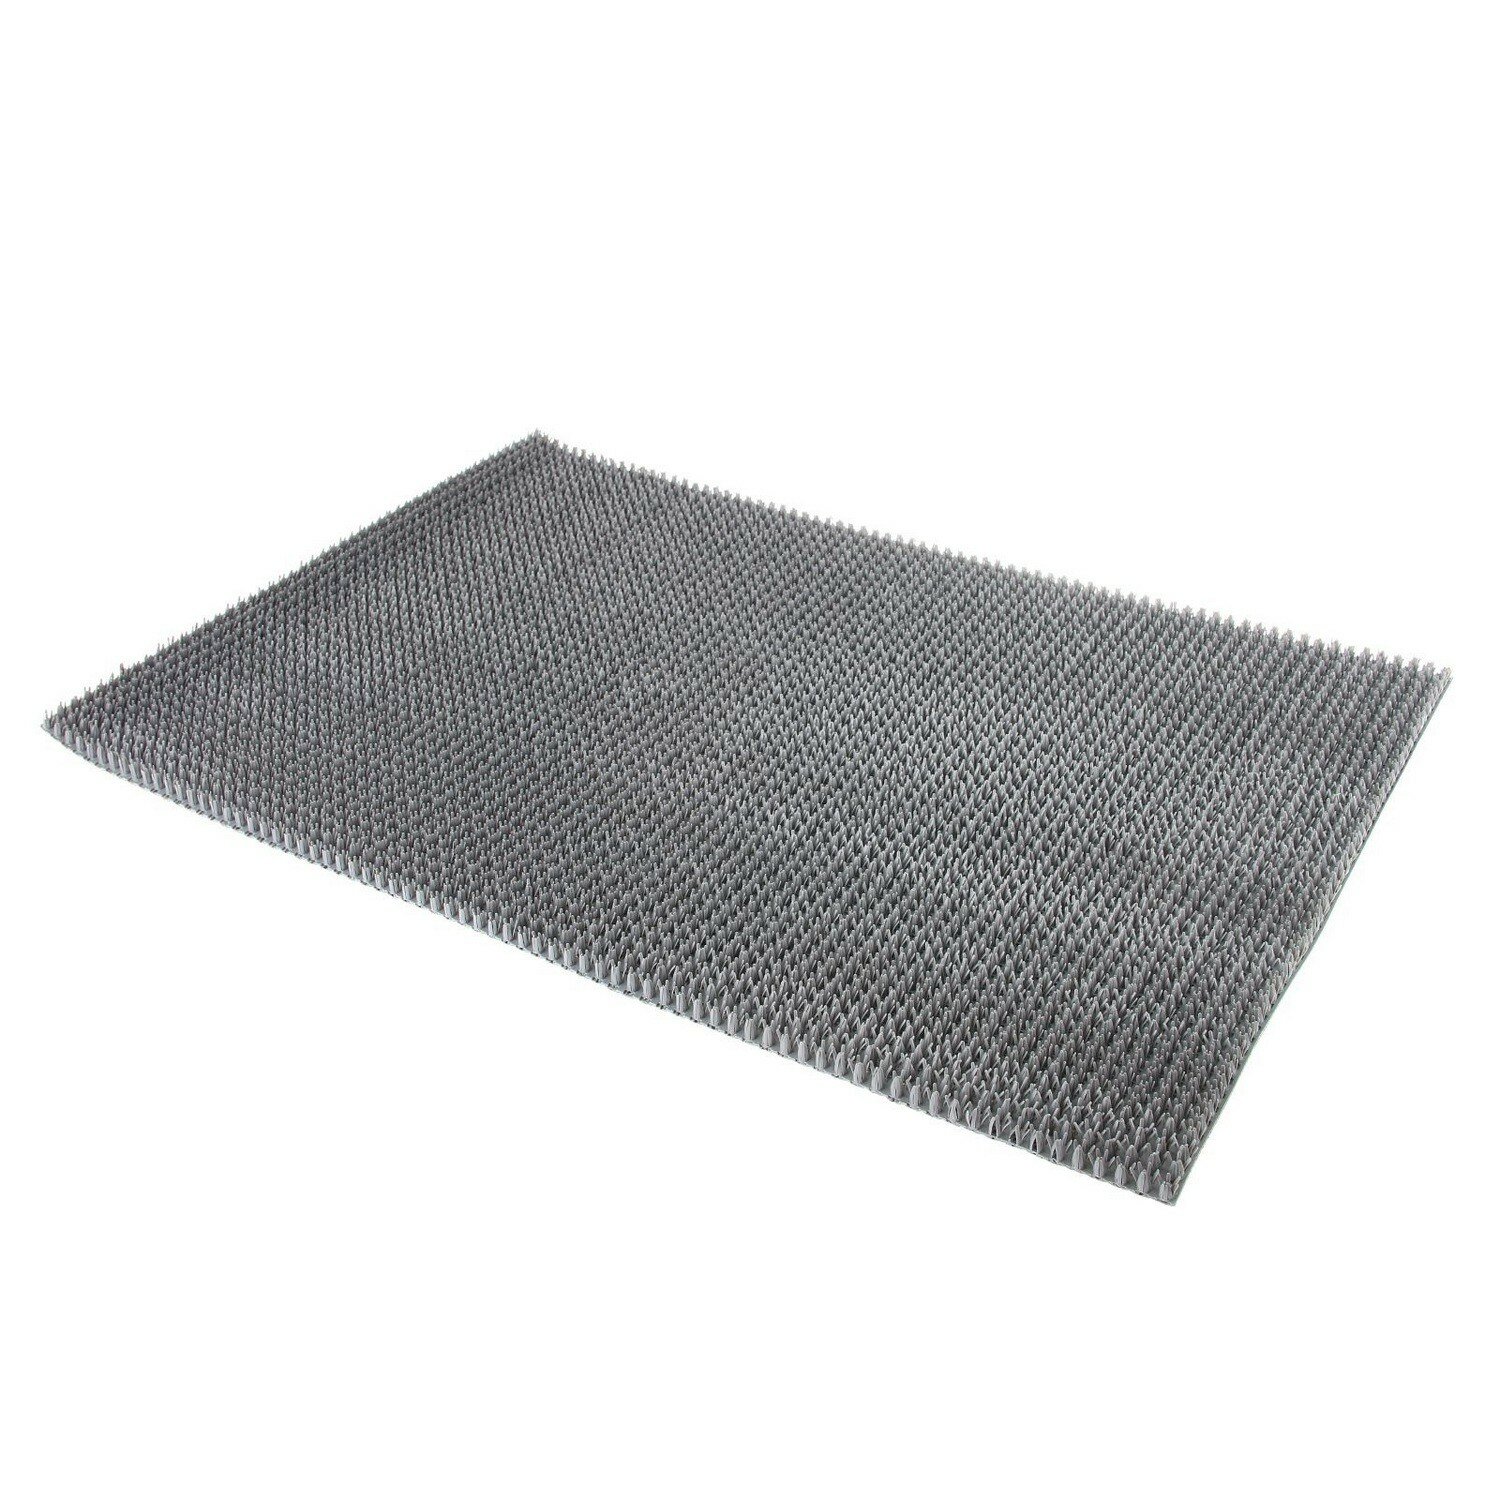 Покрытие ковровое щетинистое Inloran, 45х60 см